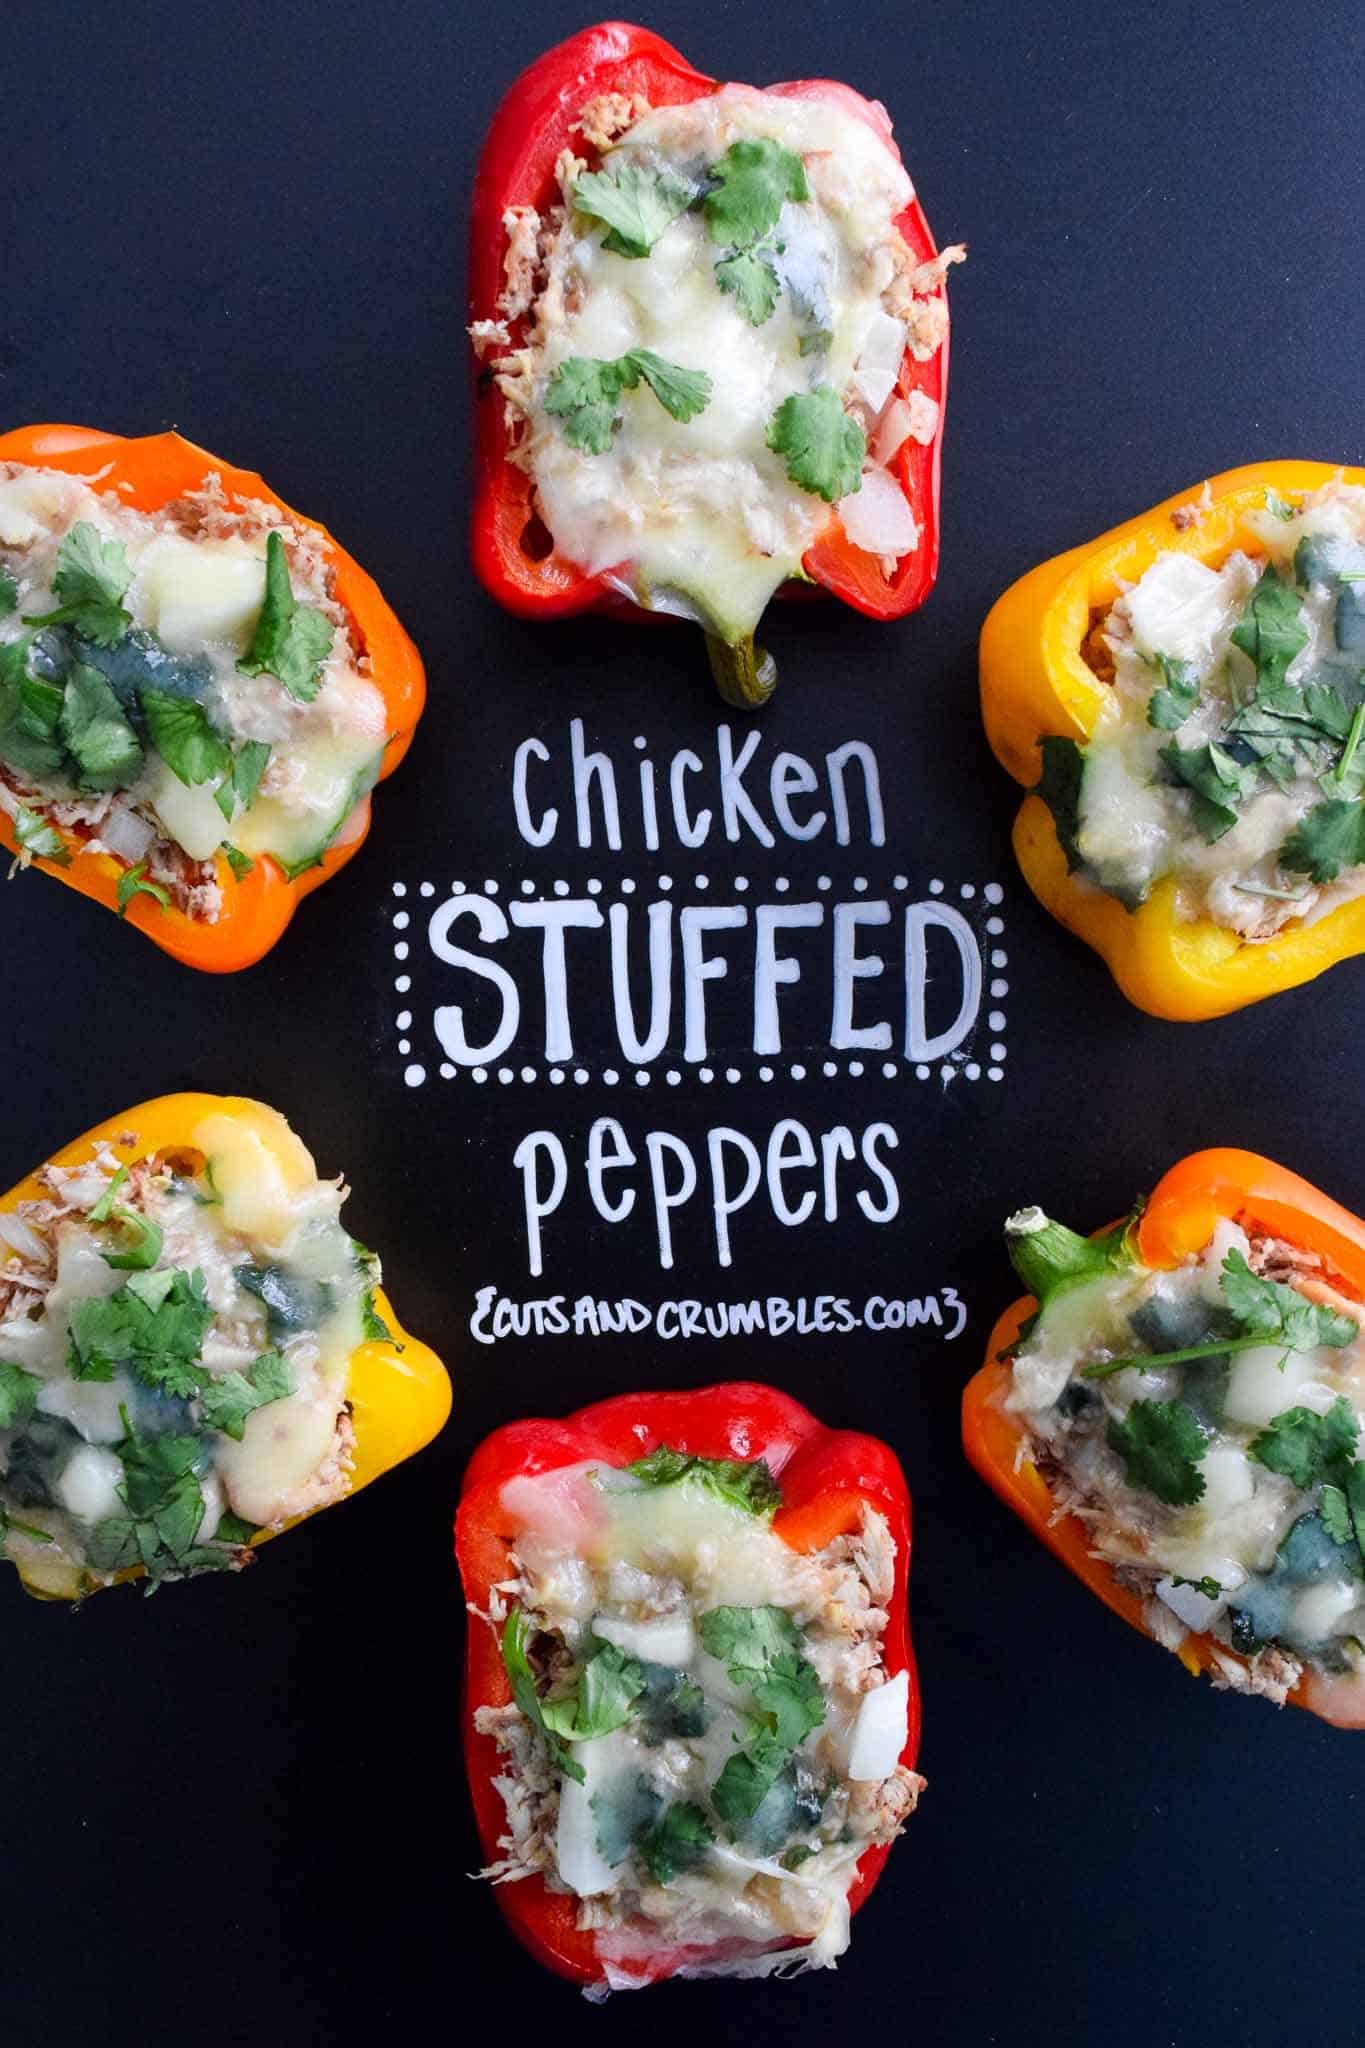 chicken stuffed peppers with title written on chalkboard